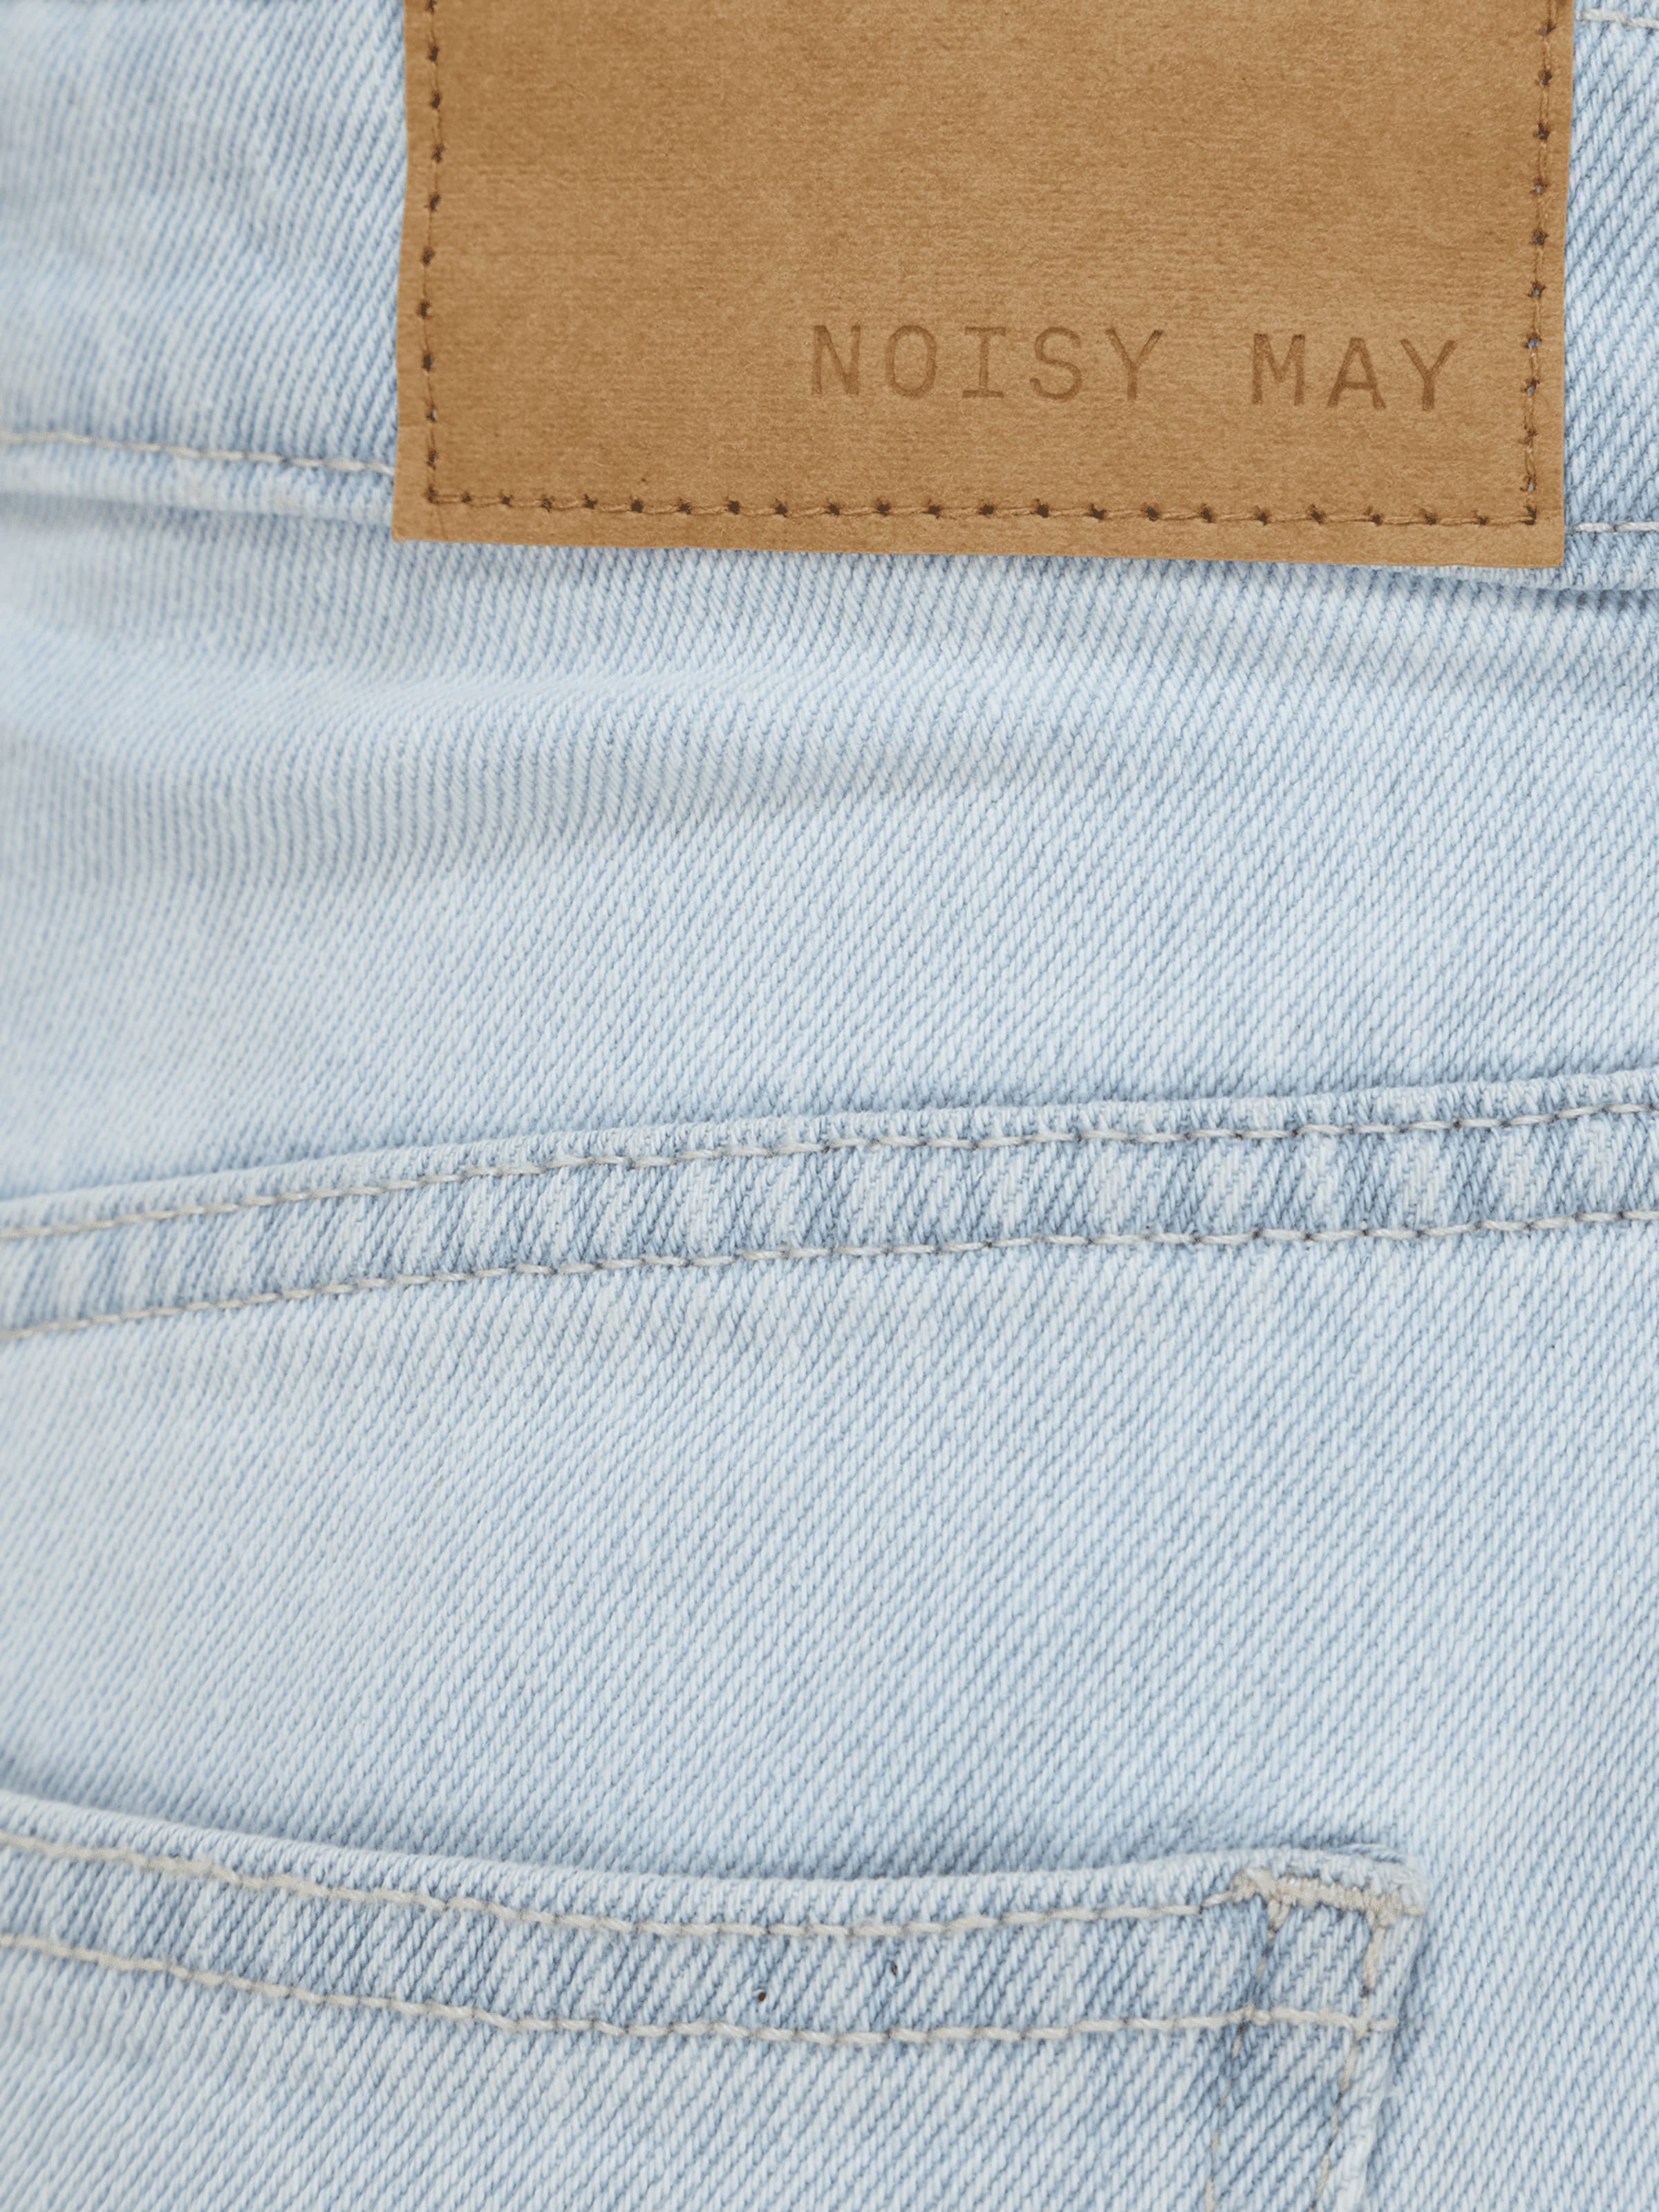 Più sostenibile 7K2J2 Noisy May Petite Jeans BROOKE in Blu Chiaro 